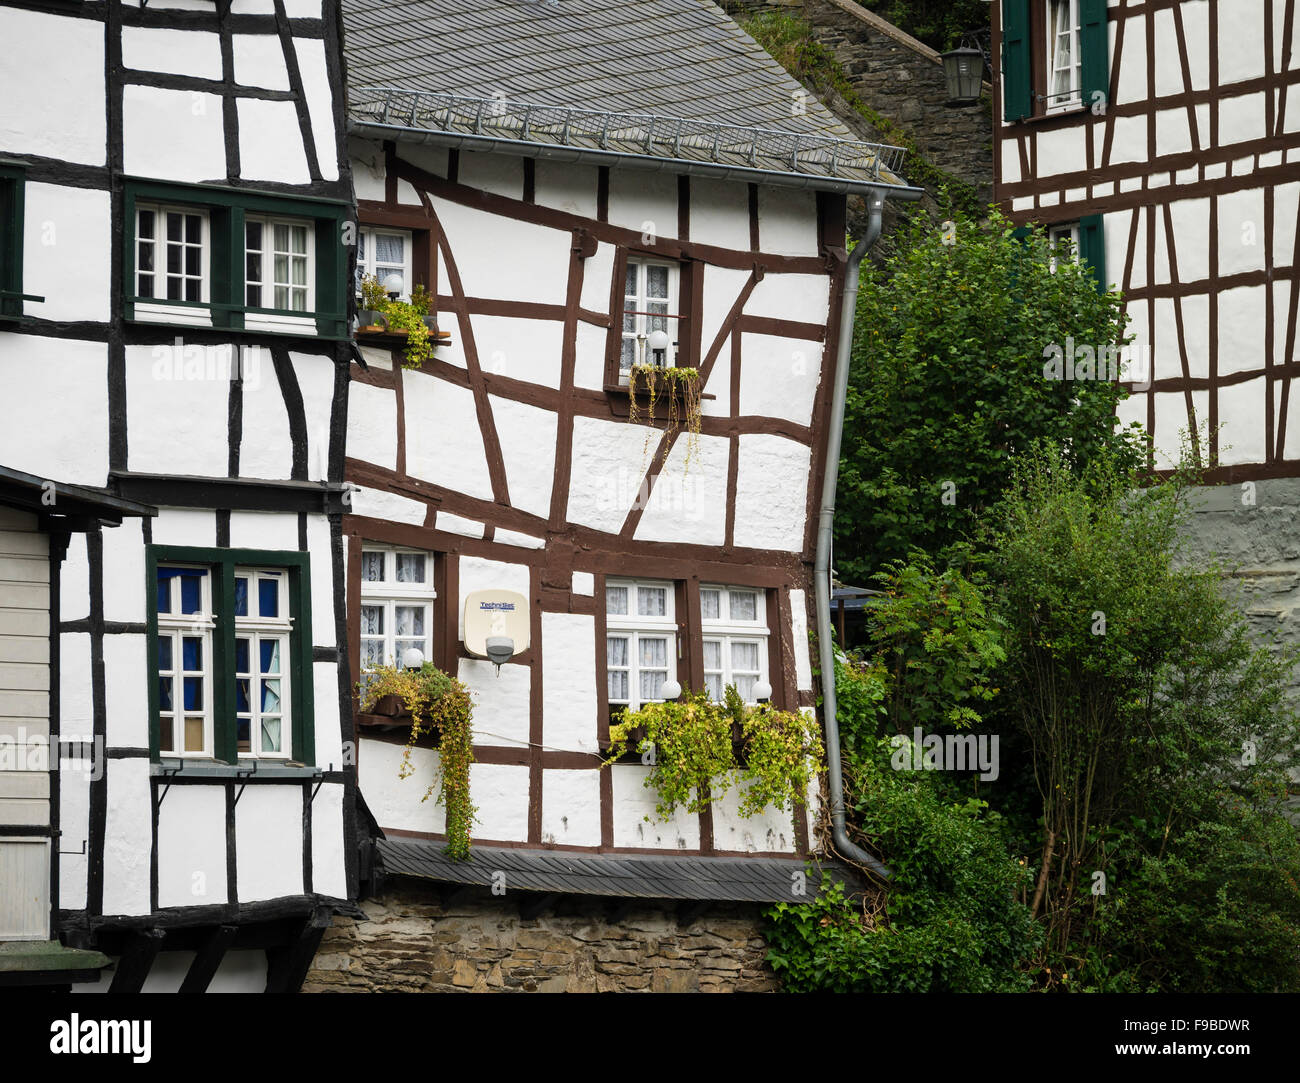 Alte Fachwerkhäuser in der Stadt Monschau / Eifel-Region / Deutschland  Stockfotografie - Alamy